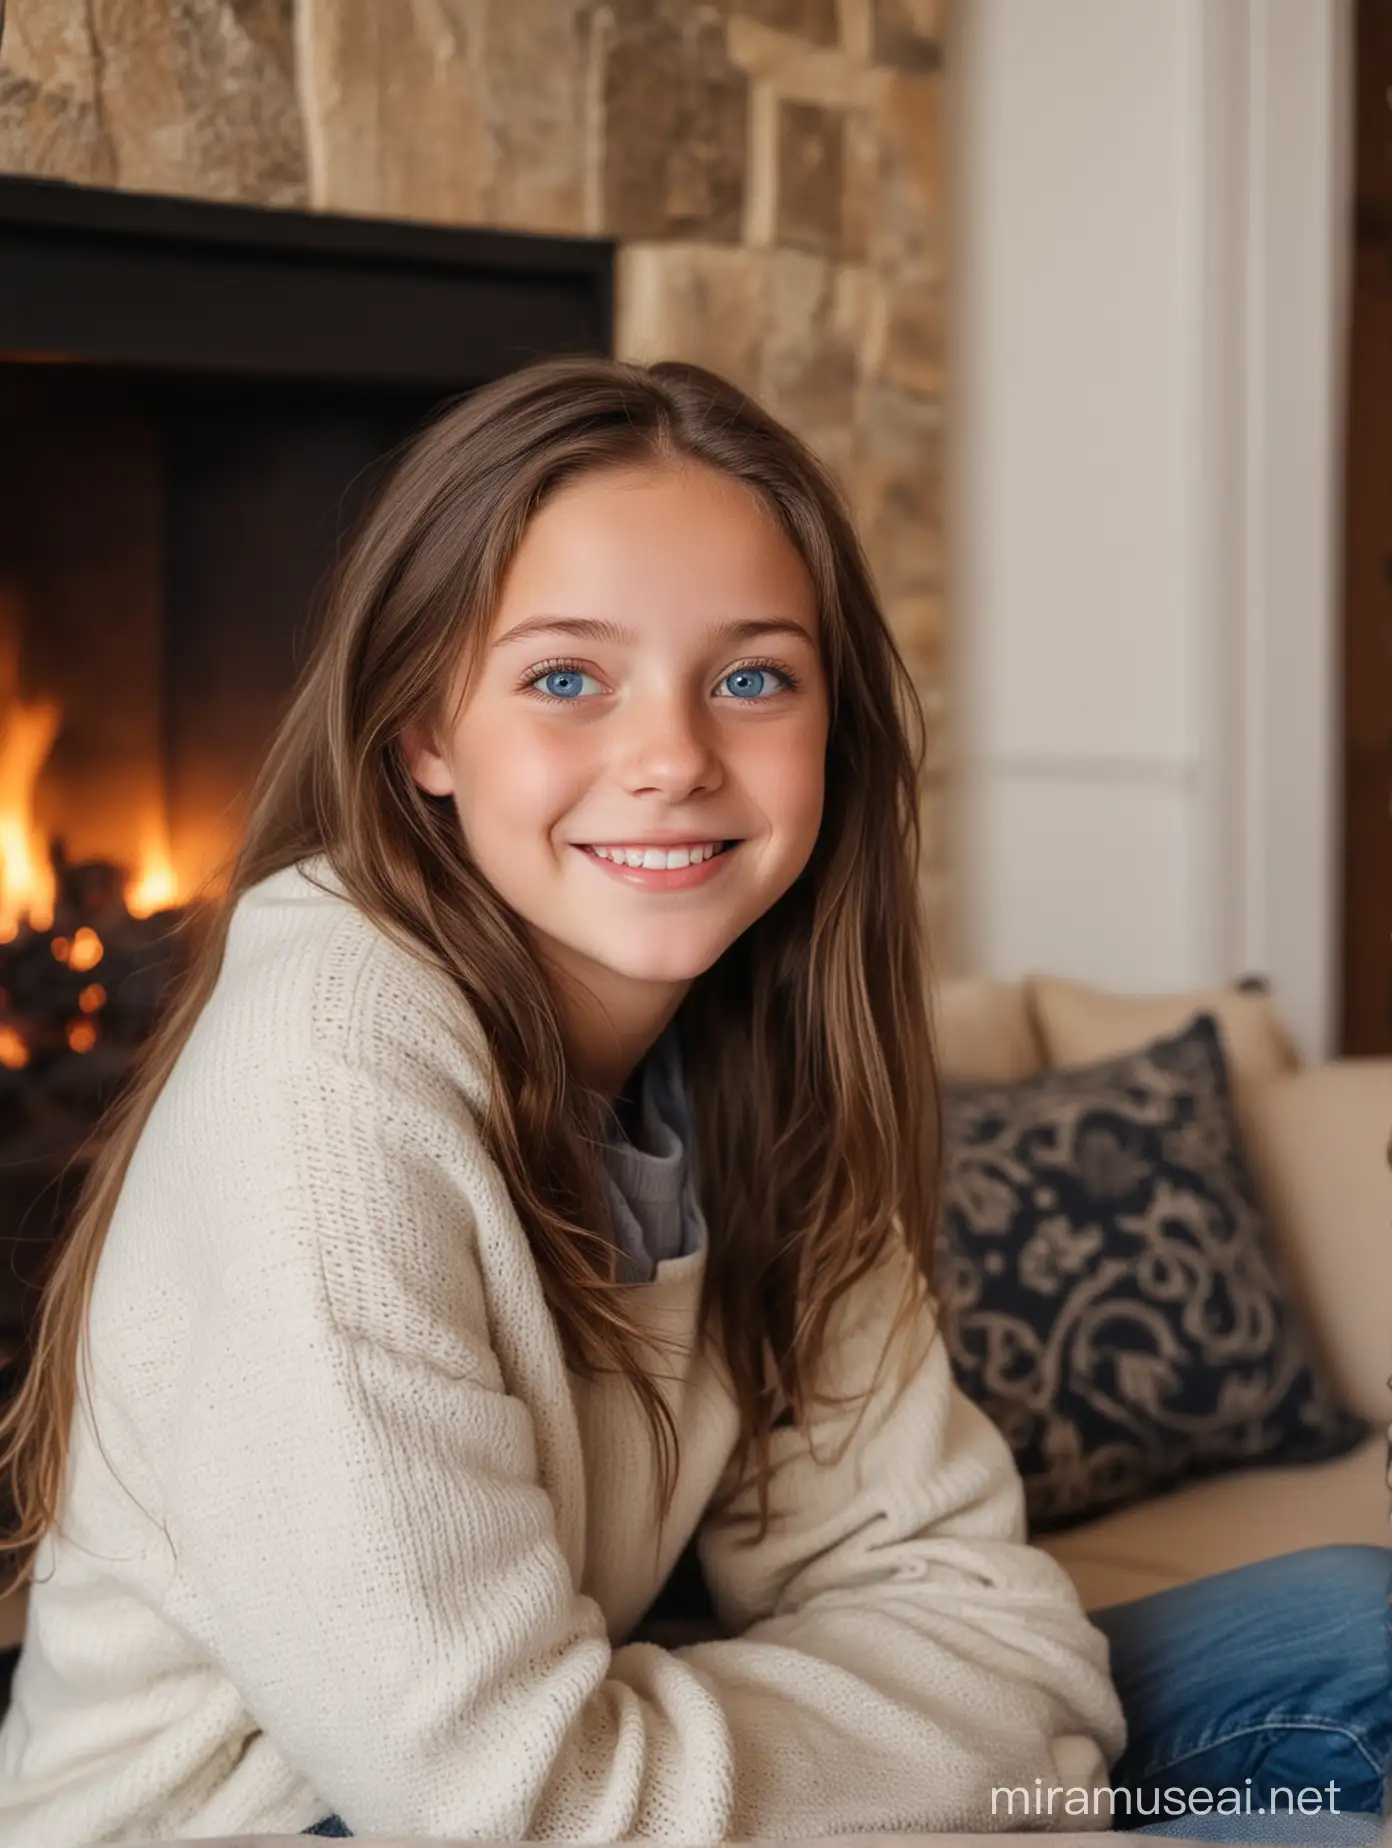 Девочка 13 лет, милая, шатенка, голубые глаза сидит на диване на фоне камина, зима, Рождество, подарок, озорная улыбка